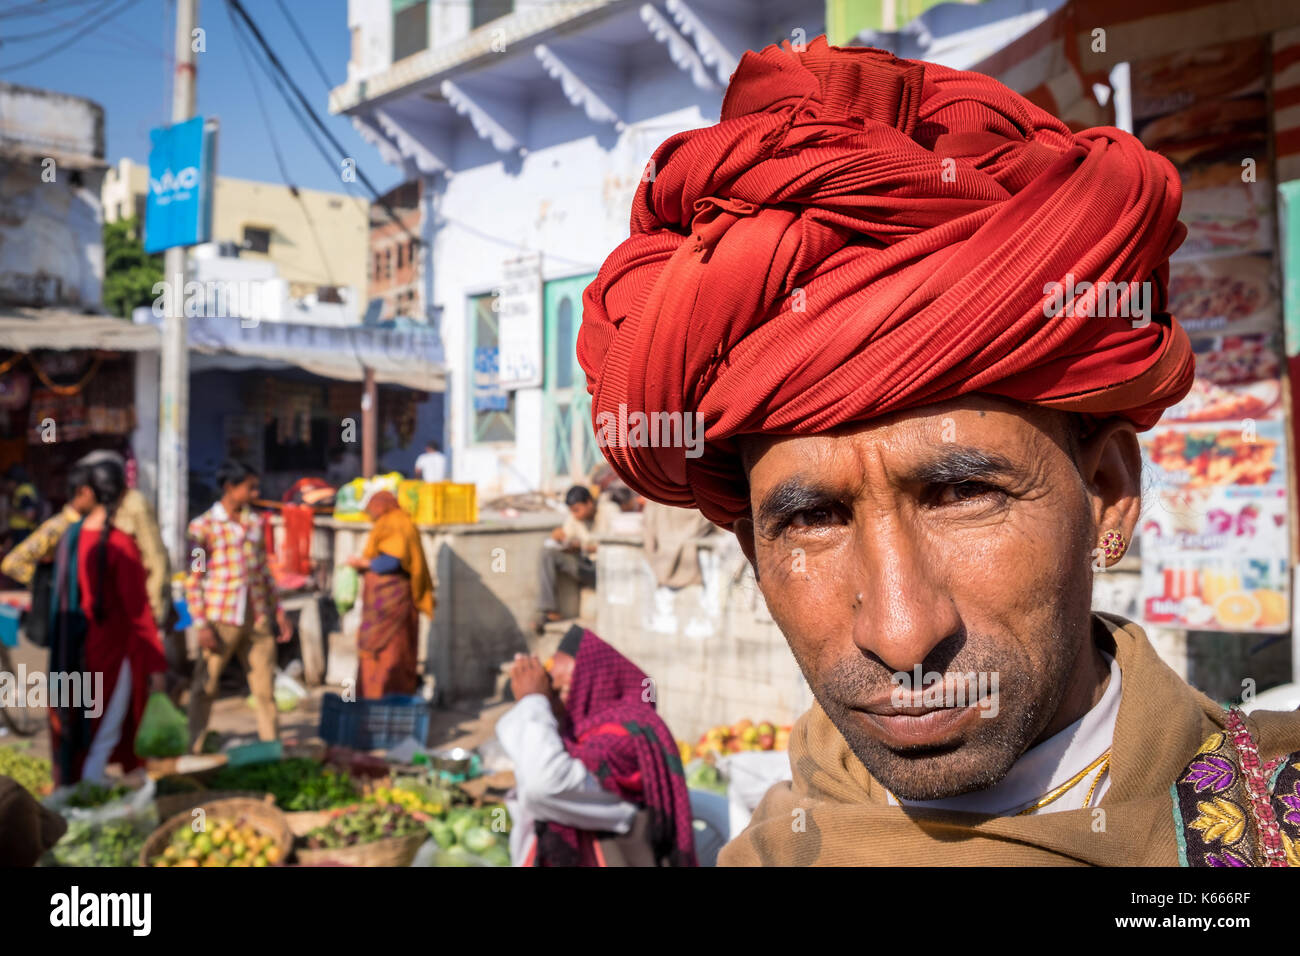 Ritratto di un senior del Rajasthan con un turbante rosso, Pushkar, Rajasthan, India Foto Stock